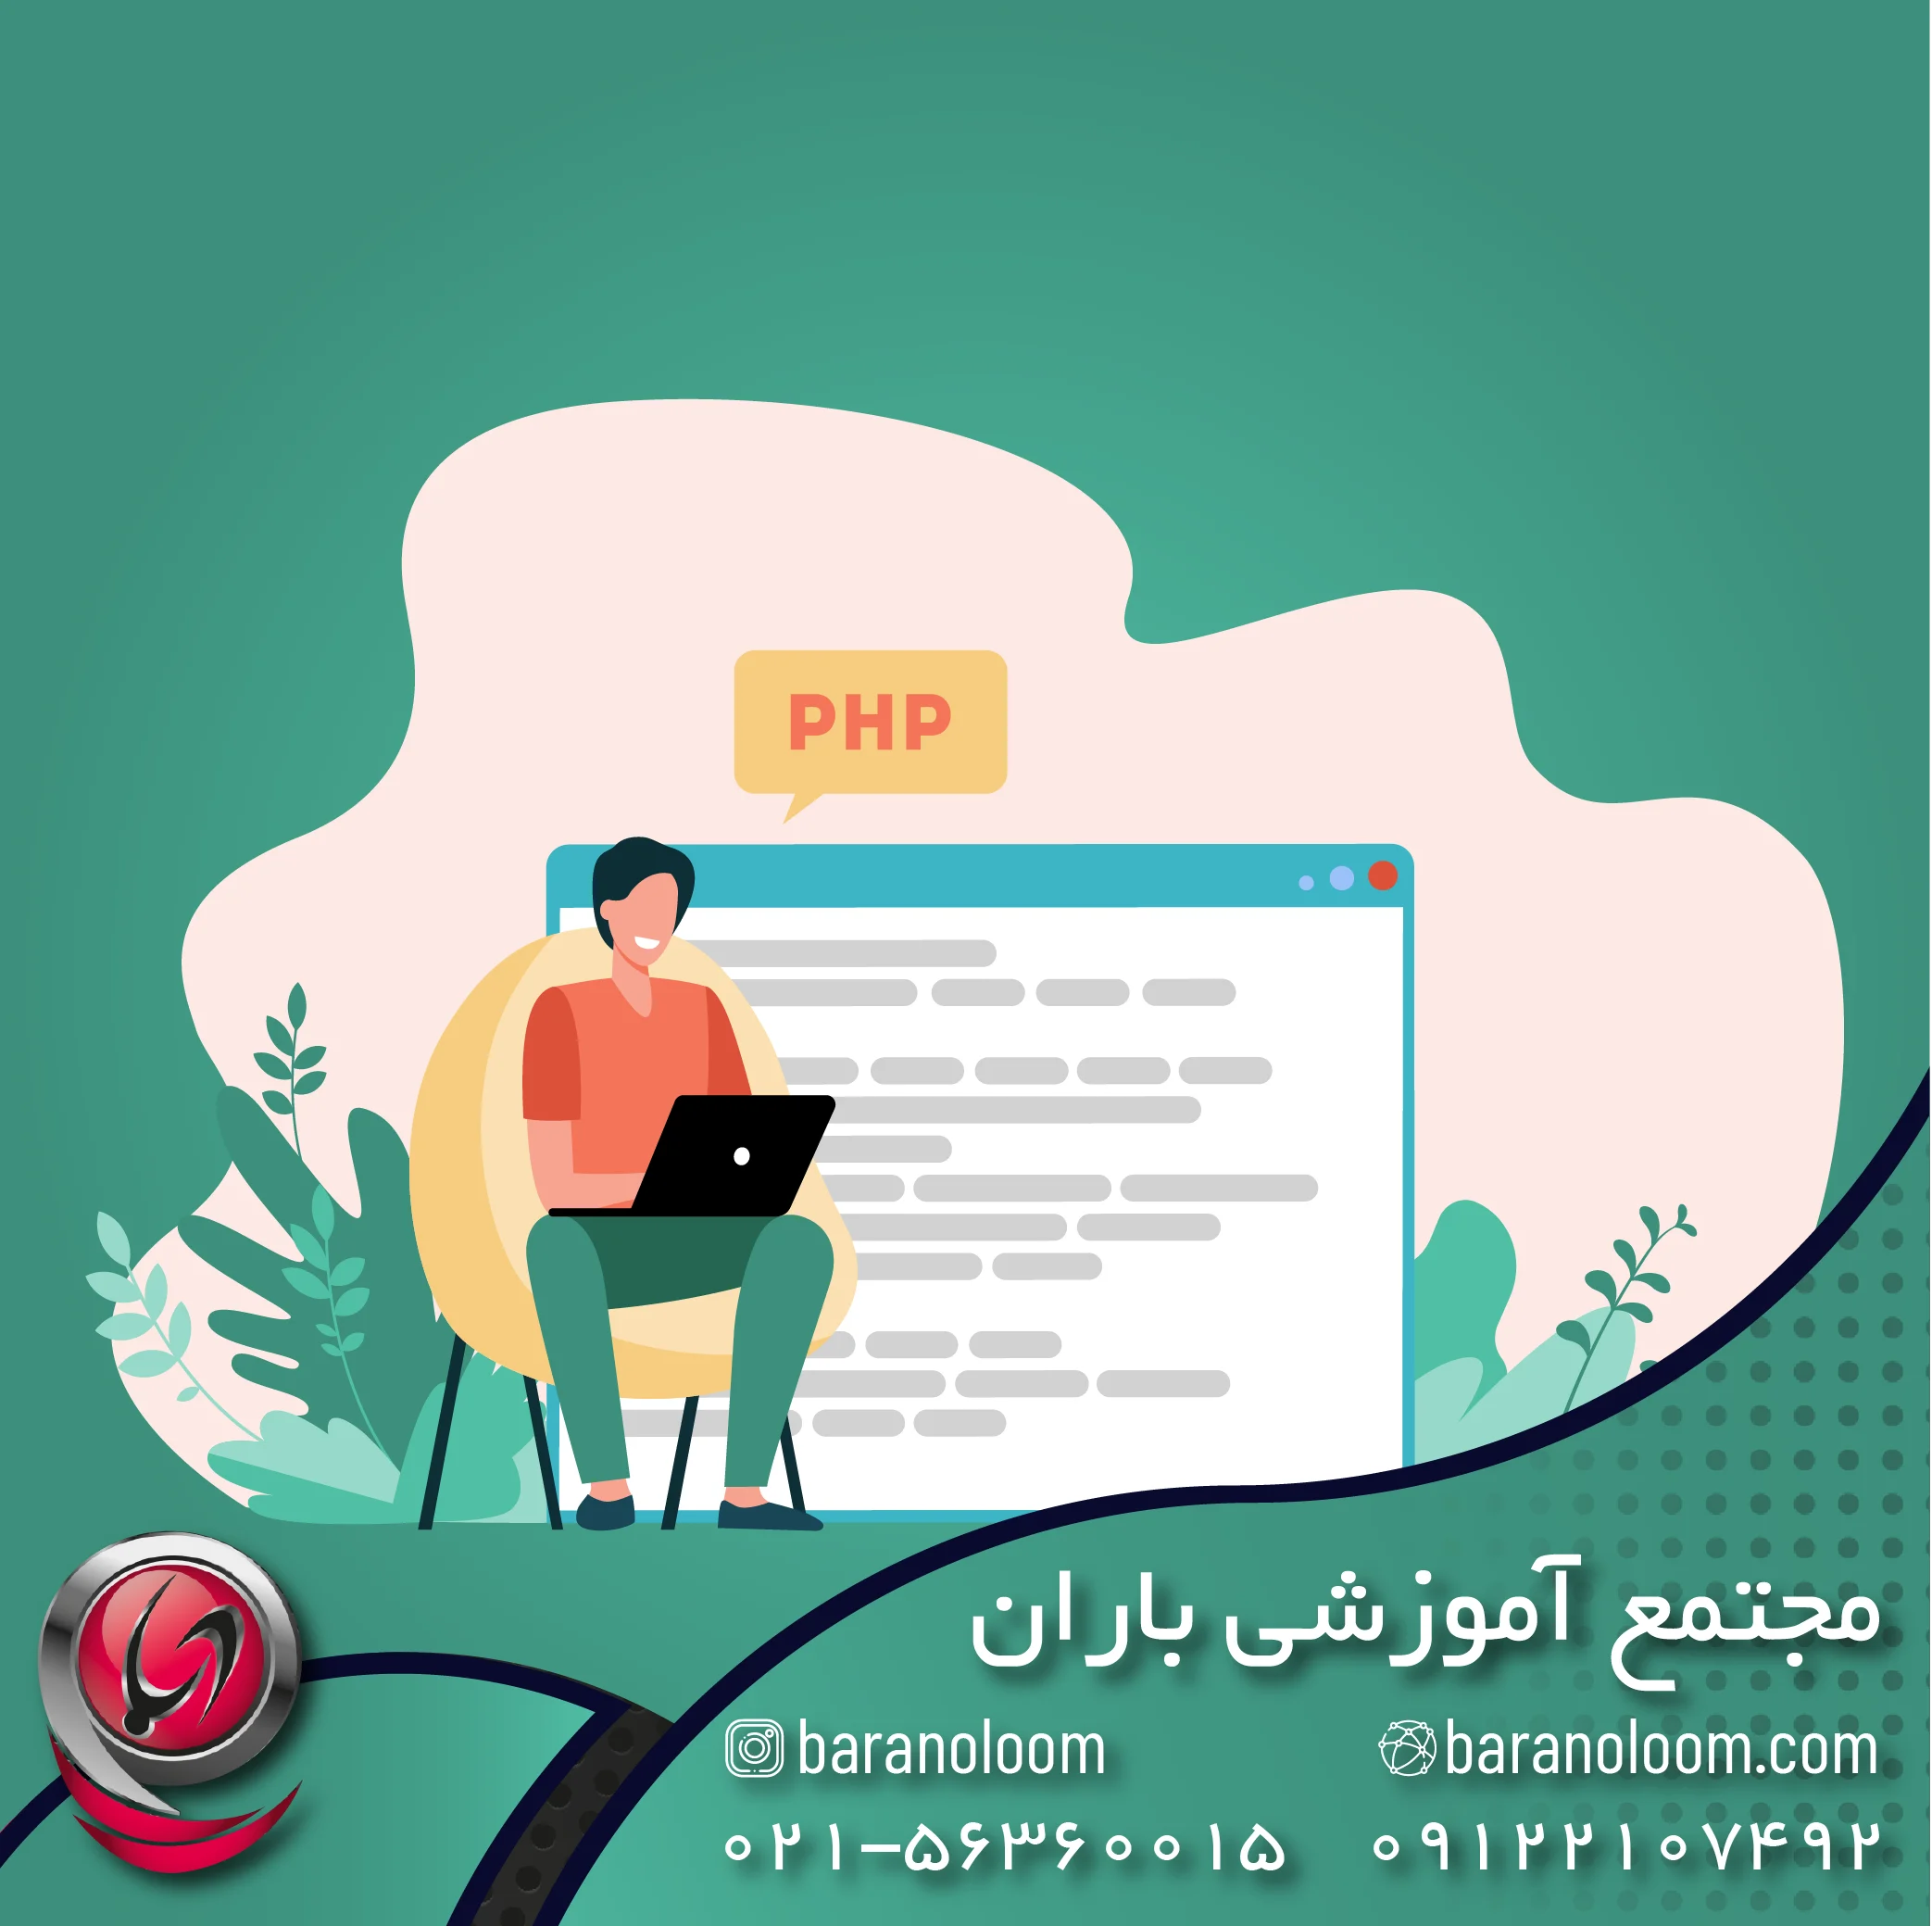 آموزش PHP در اسلامشهر